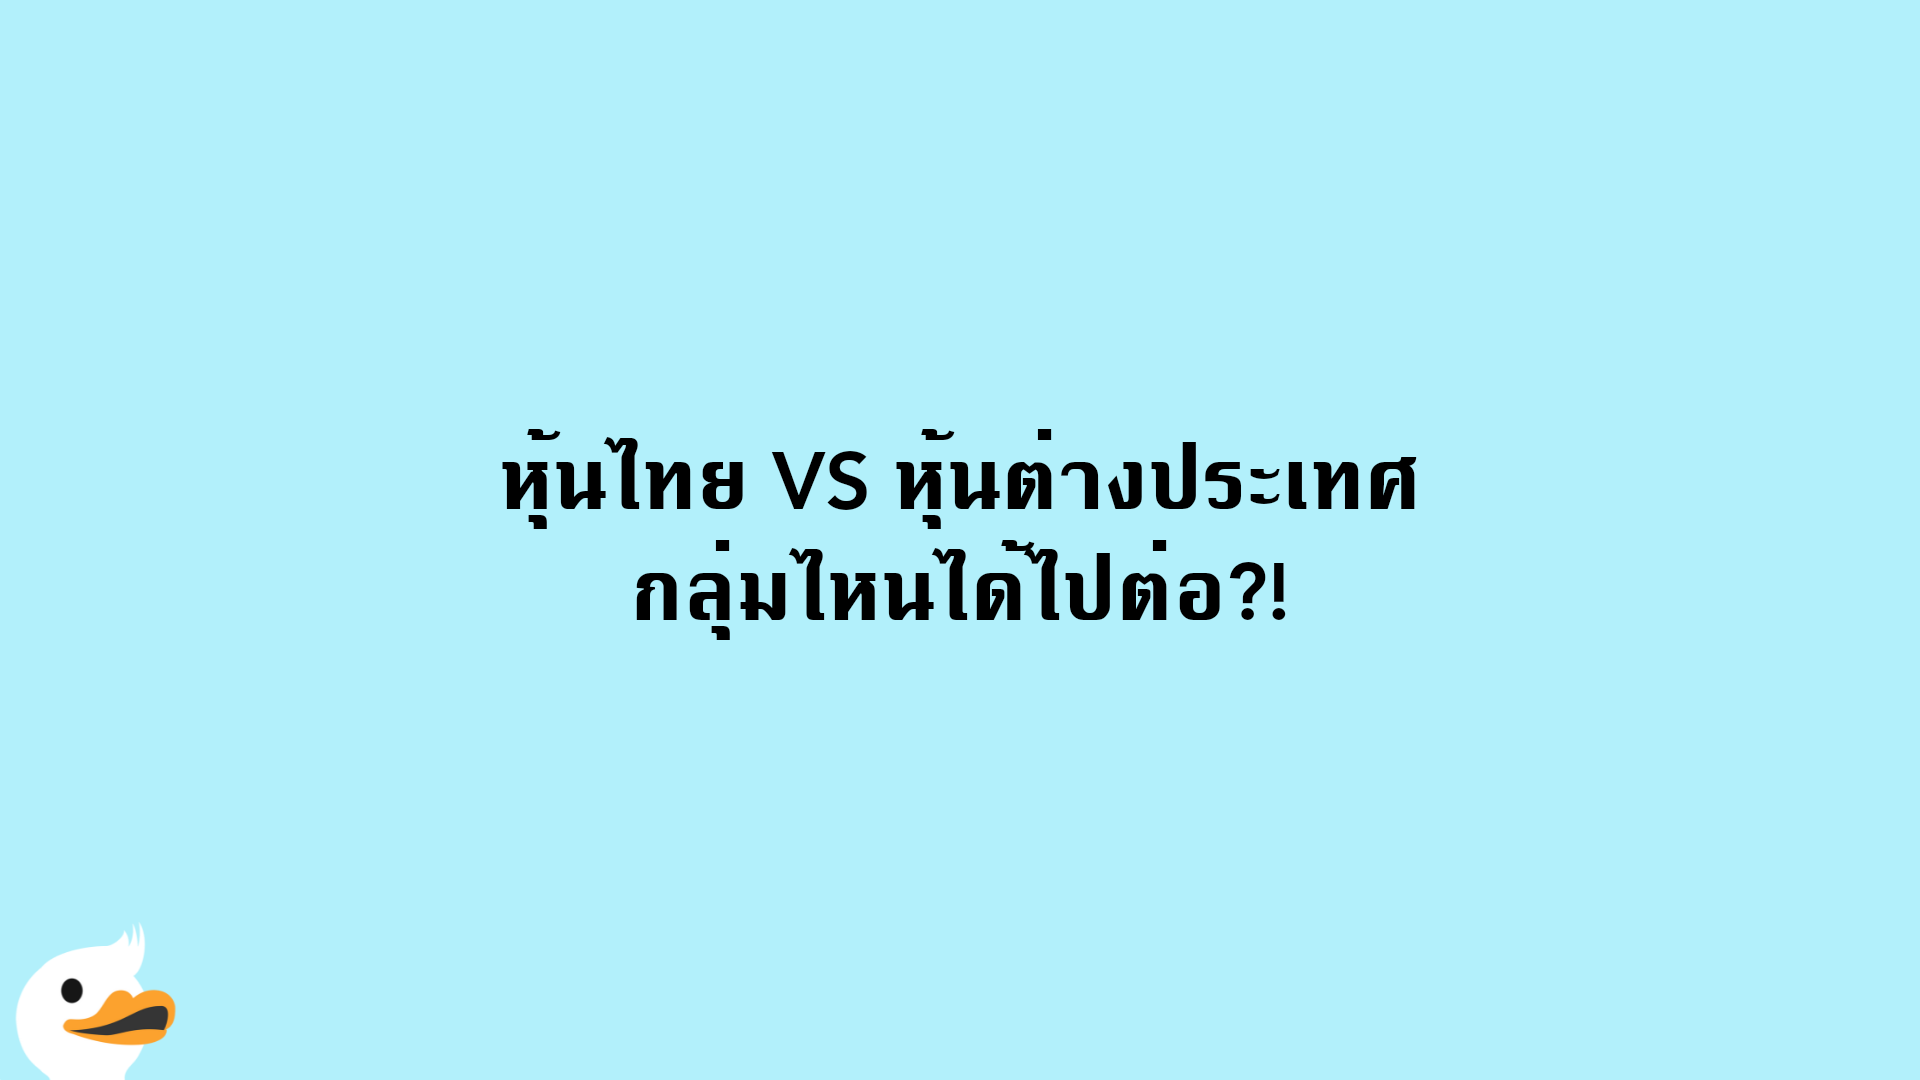 หุ้นไทย VS หุ้นต่างประเทศ กลุ่มไหนได้ไปต่อ?!